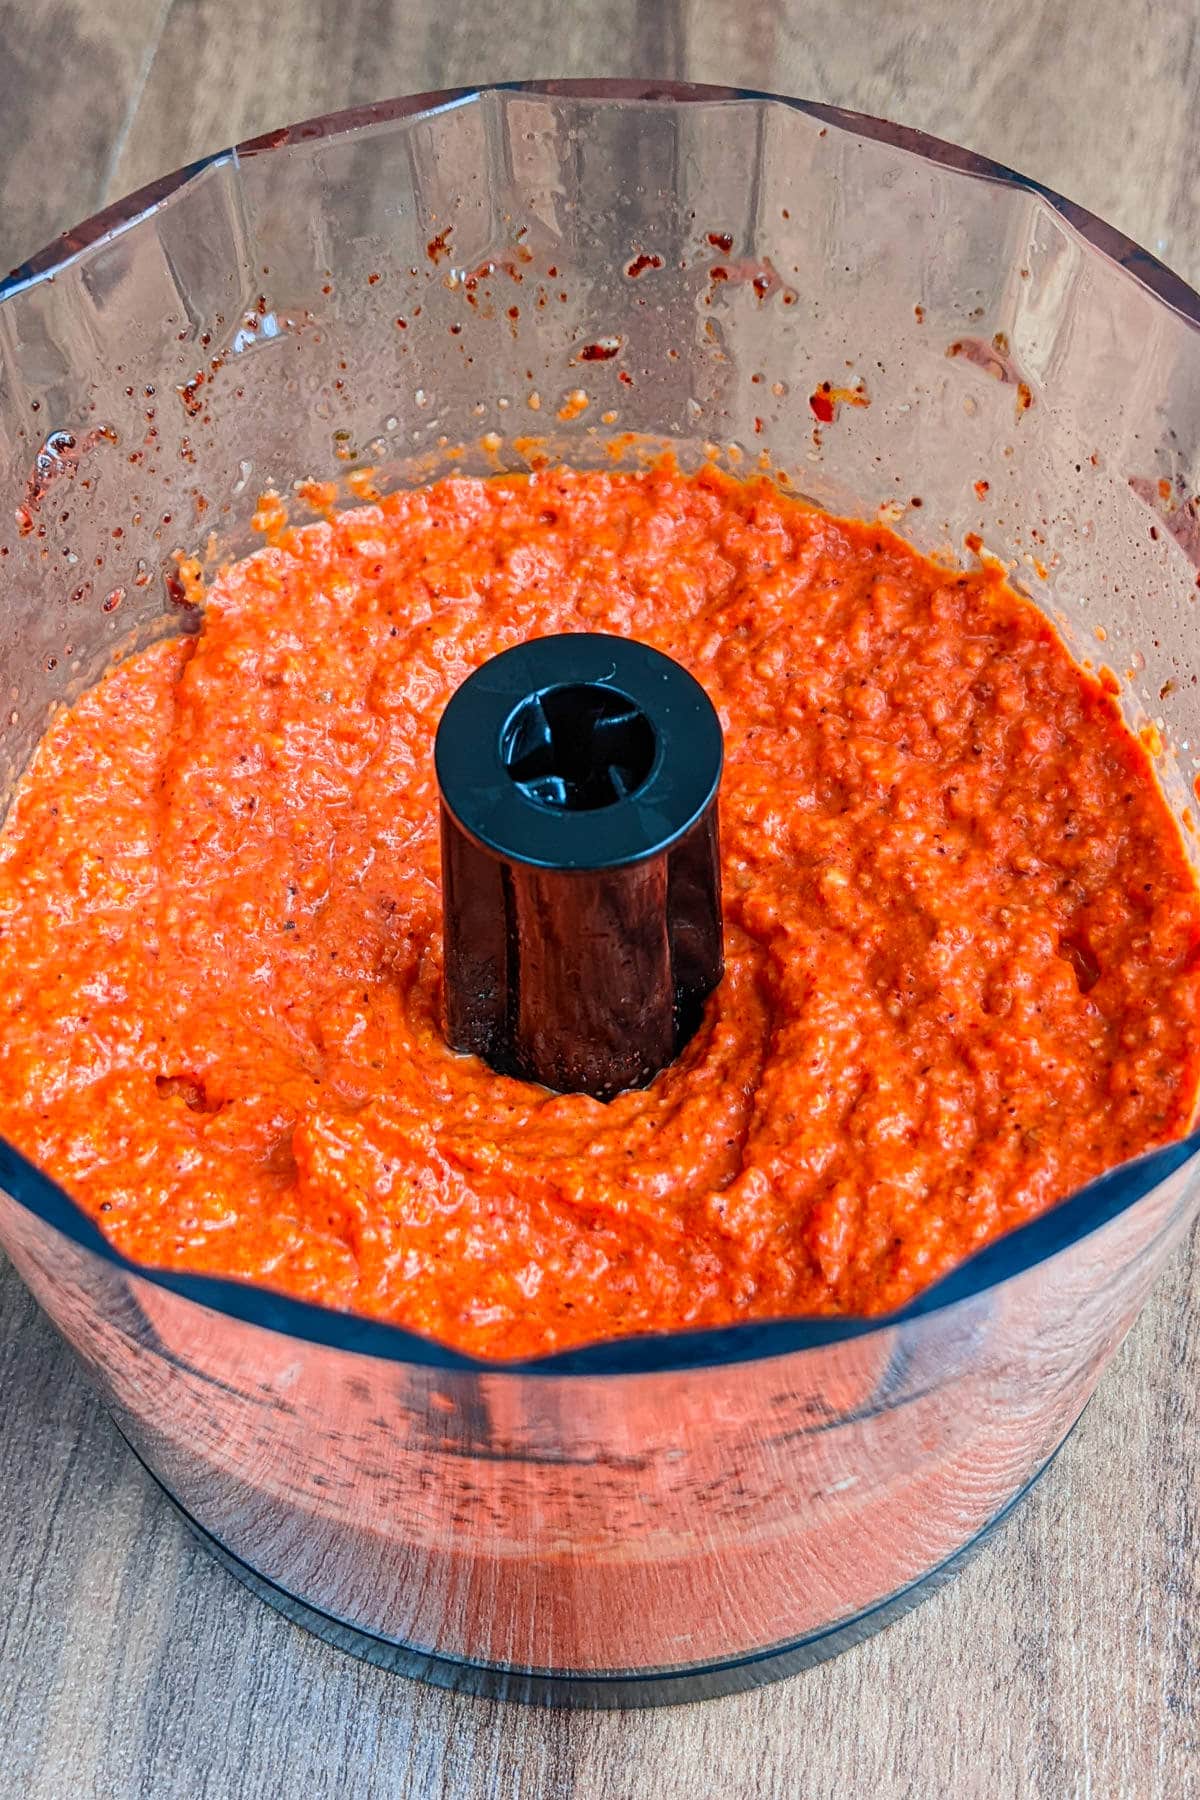 Mixing Romesco sauce in a mixer.